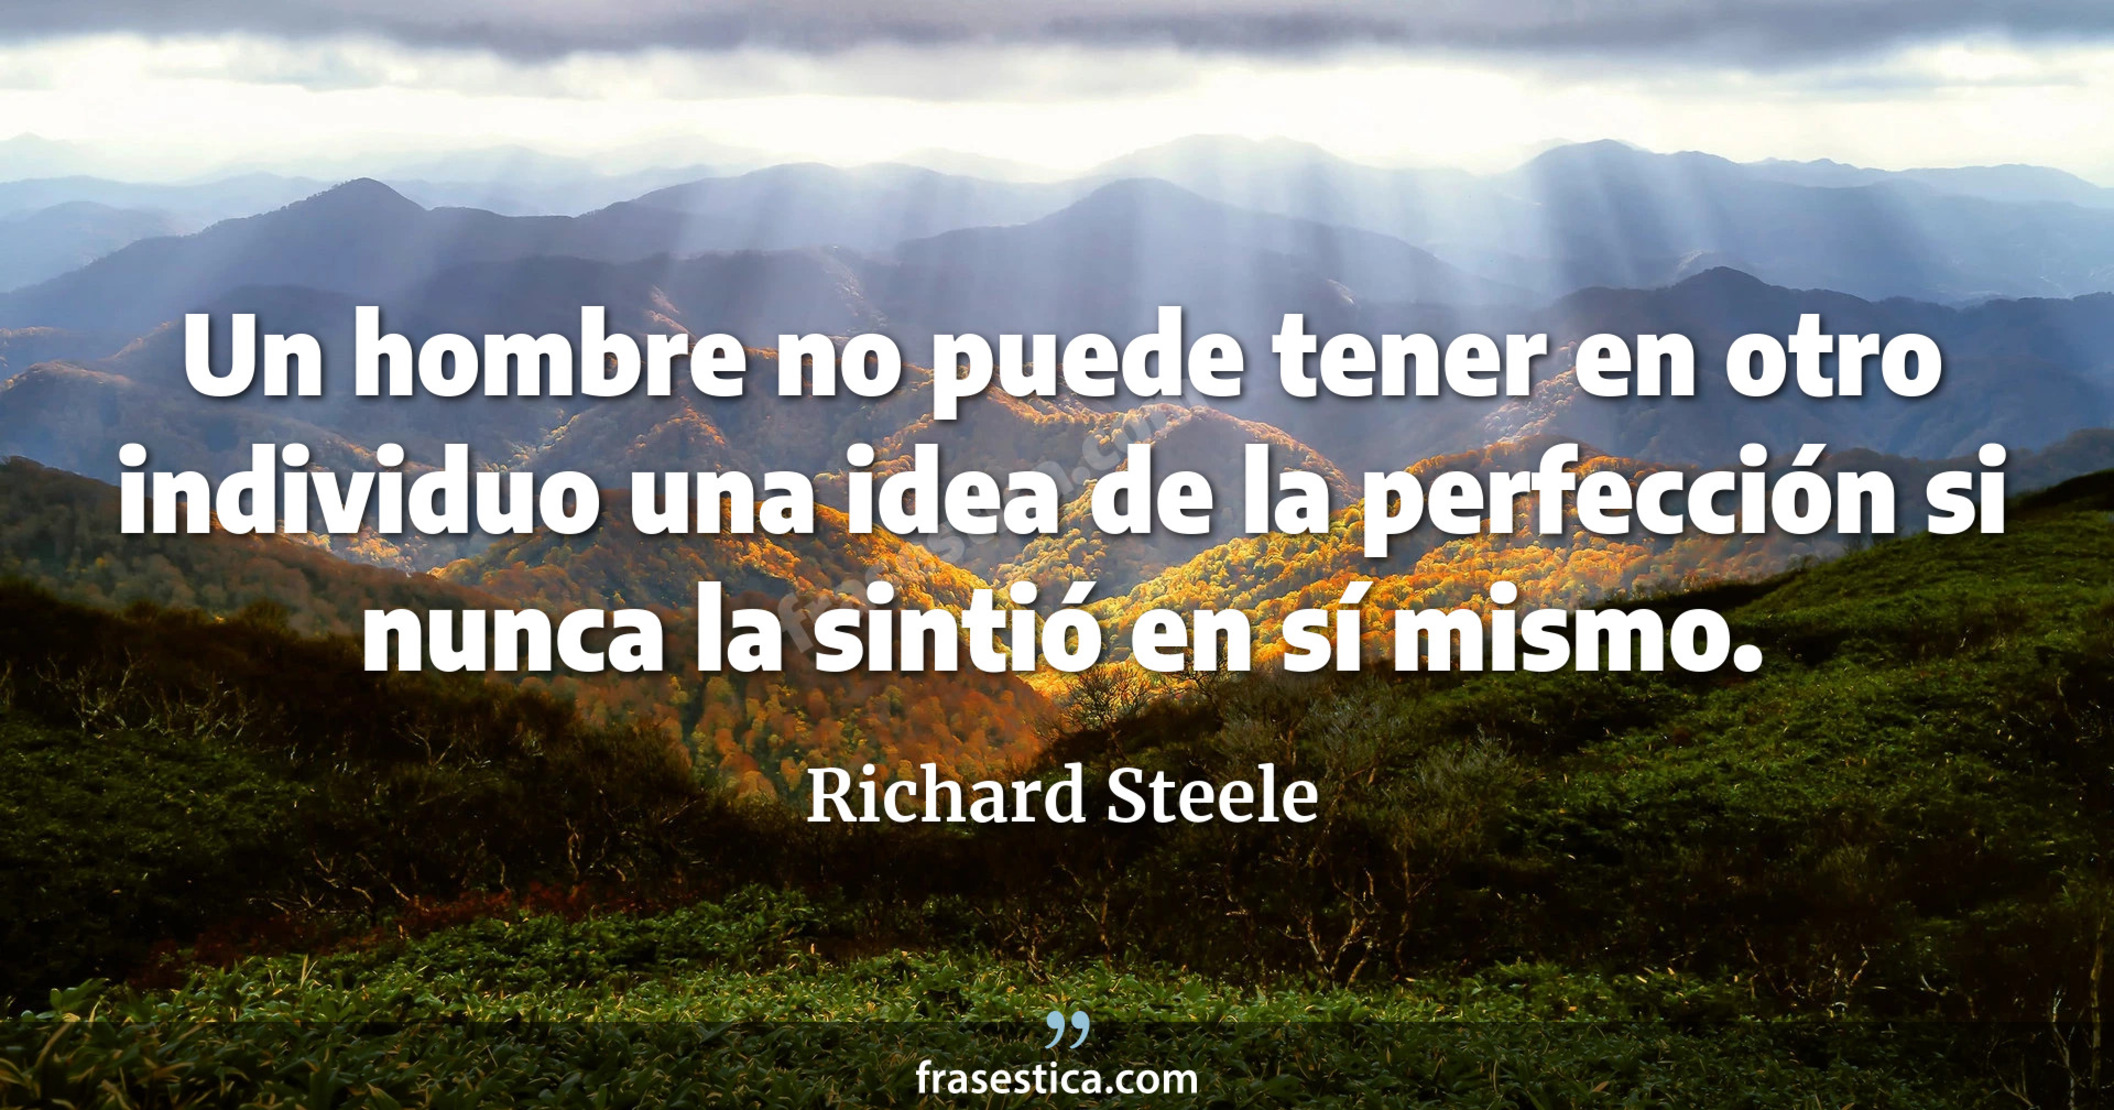 Un hombre no puede tener en otro individuo una idea de la perfección si nunca la sintió en sí mismo. - Richard Steele